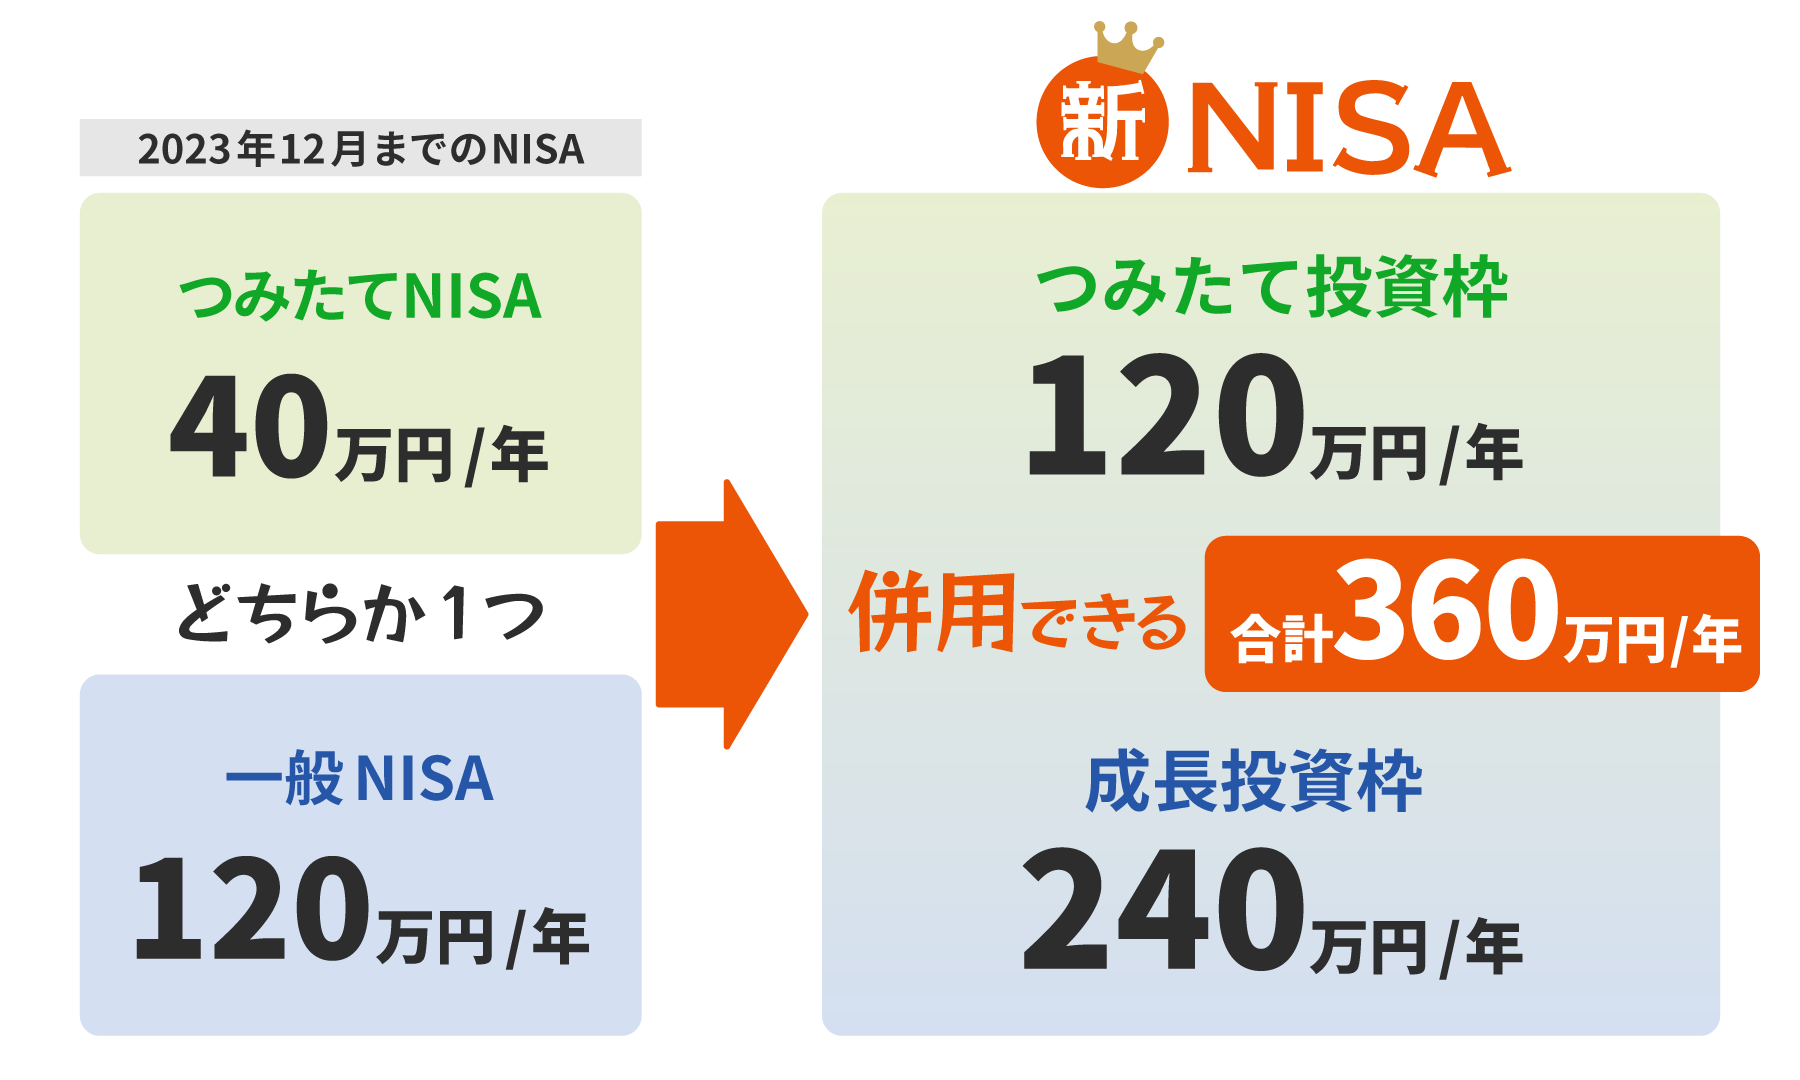 異なるニーズに応えるためにNISA制度は２種類用意されている